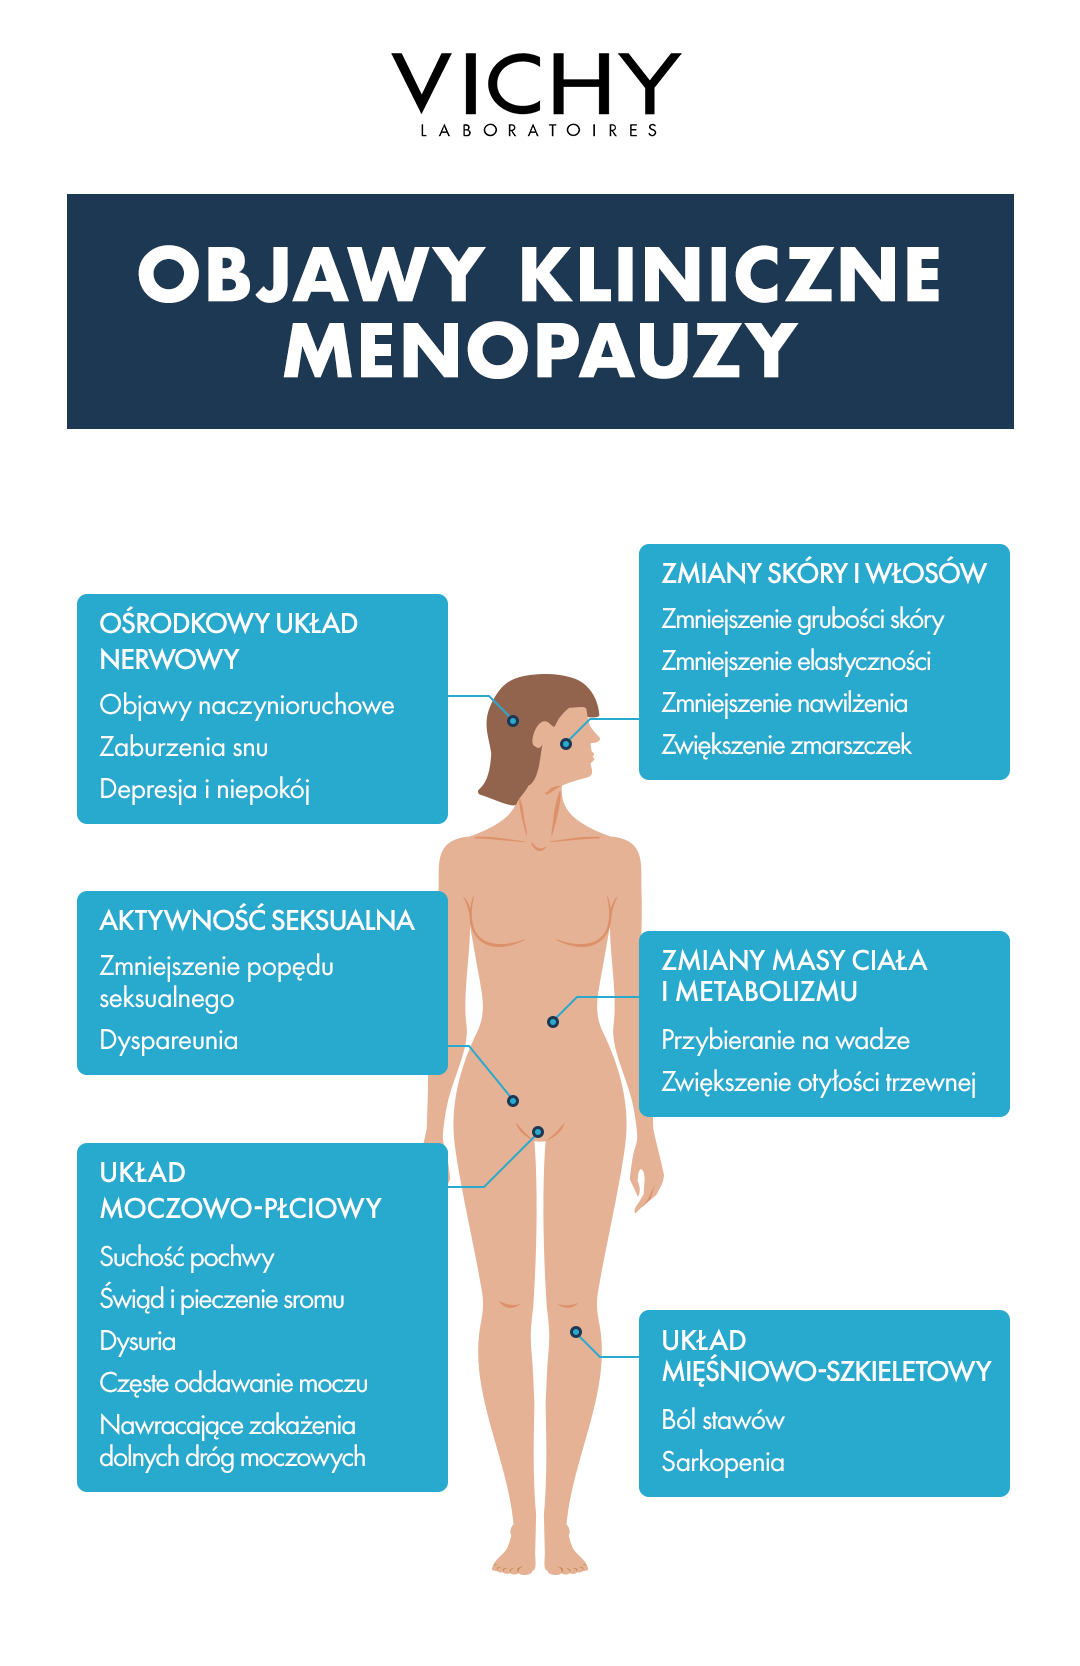 Menopauza - czy badania krwi są konieczne? Poznaj objawy menopauzy